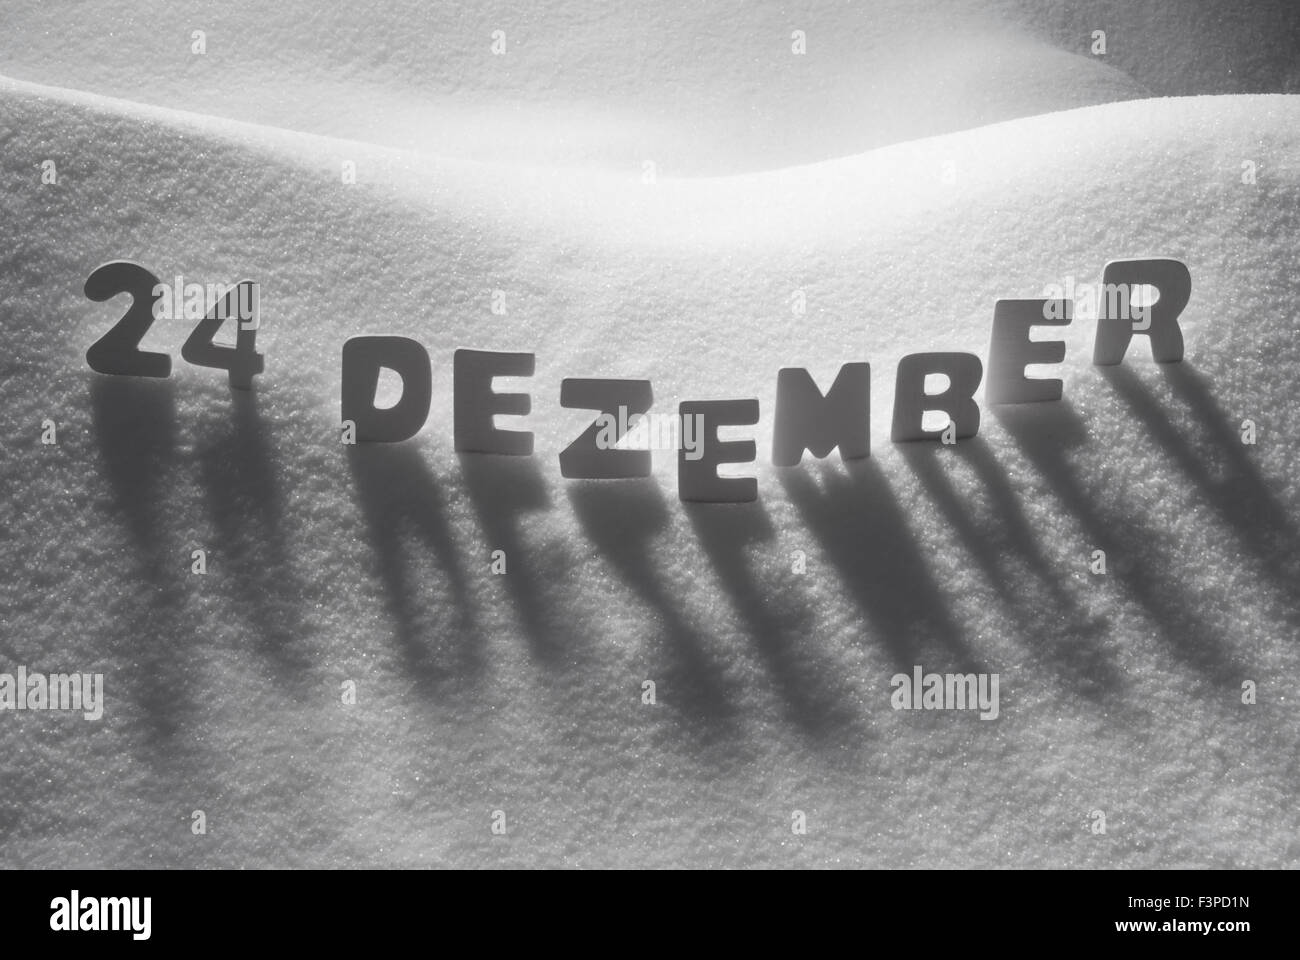 Parola bianco 24 Dezember significa 24 dicembre sulla neve Foto Stock